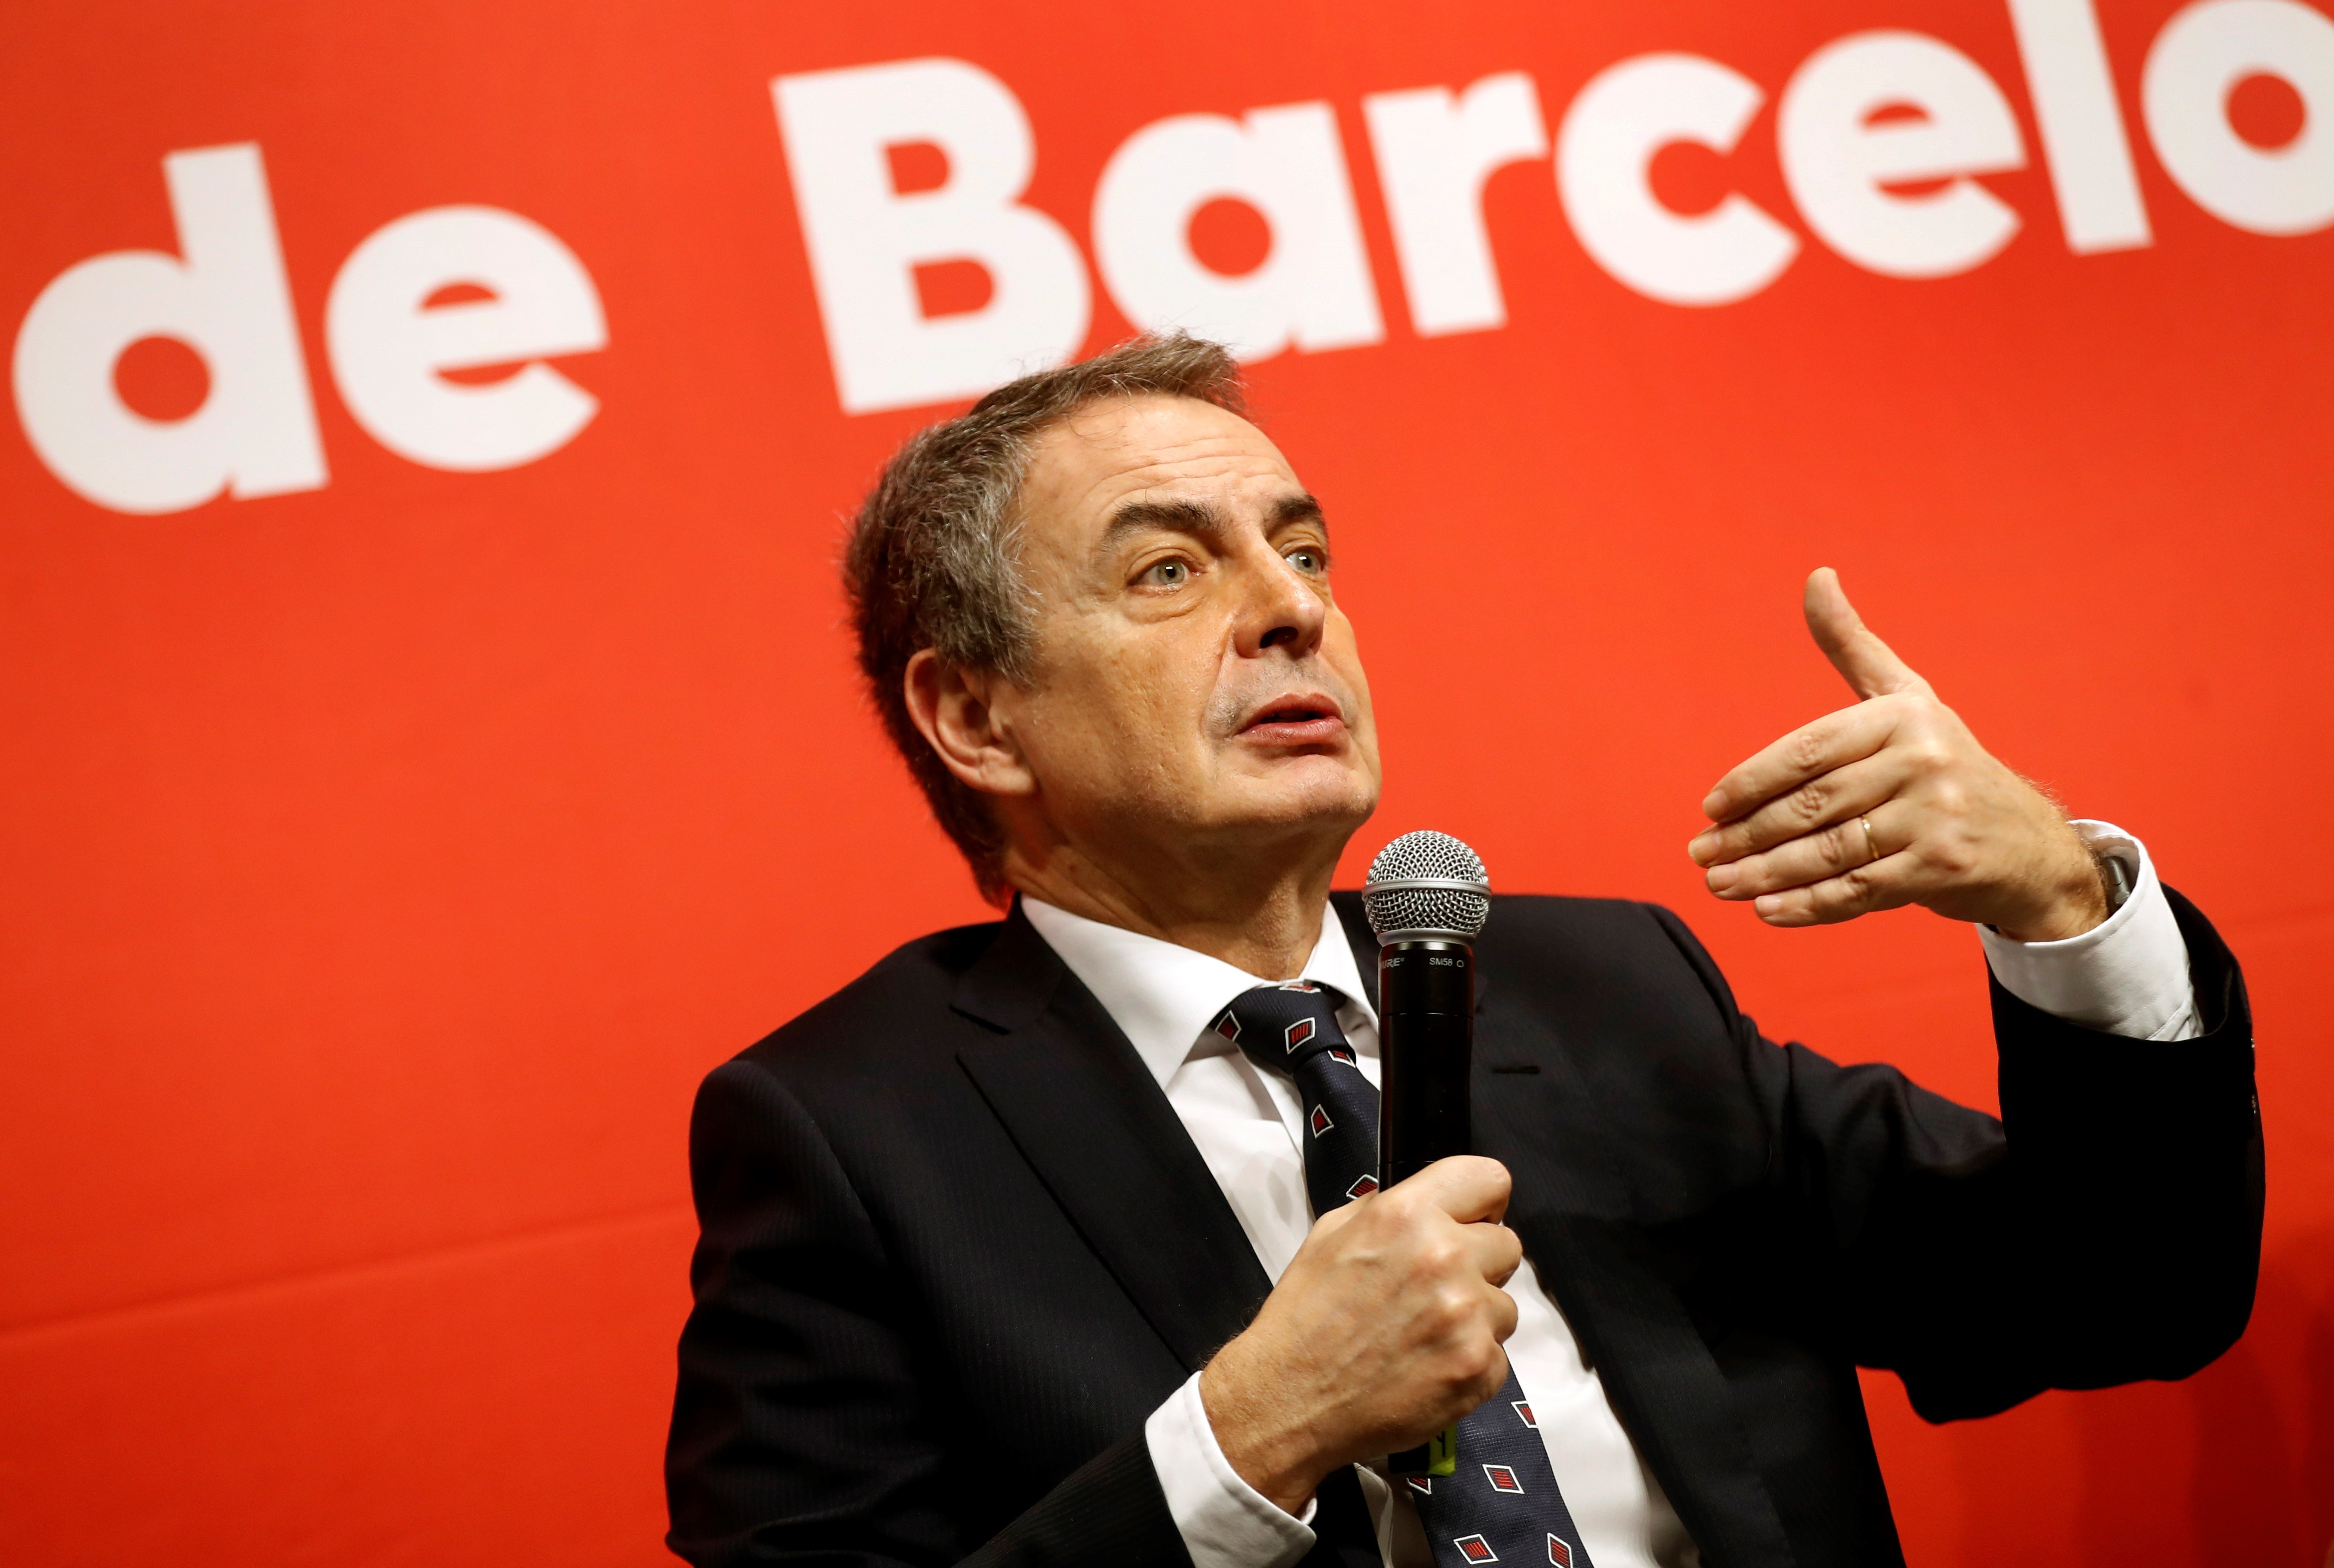 Zapatero calcula "almenys 5 anys" per solucionar el conflicte català